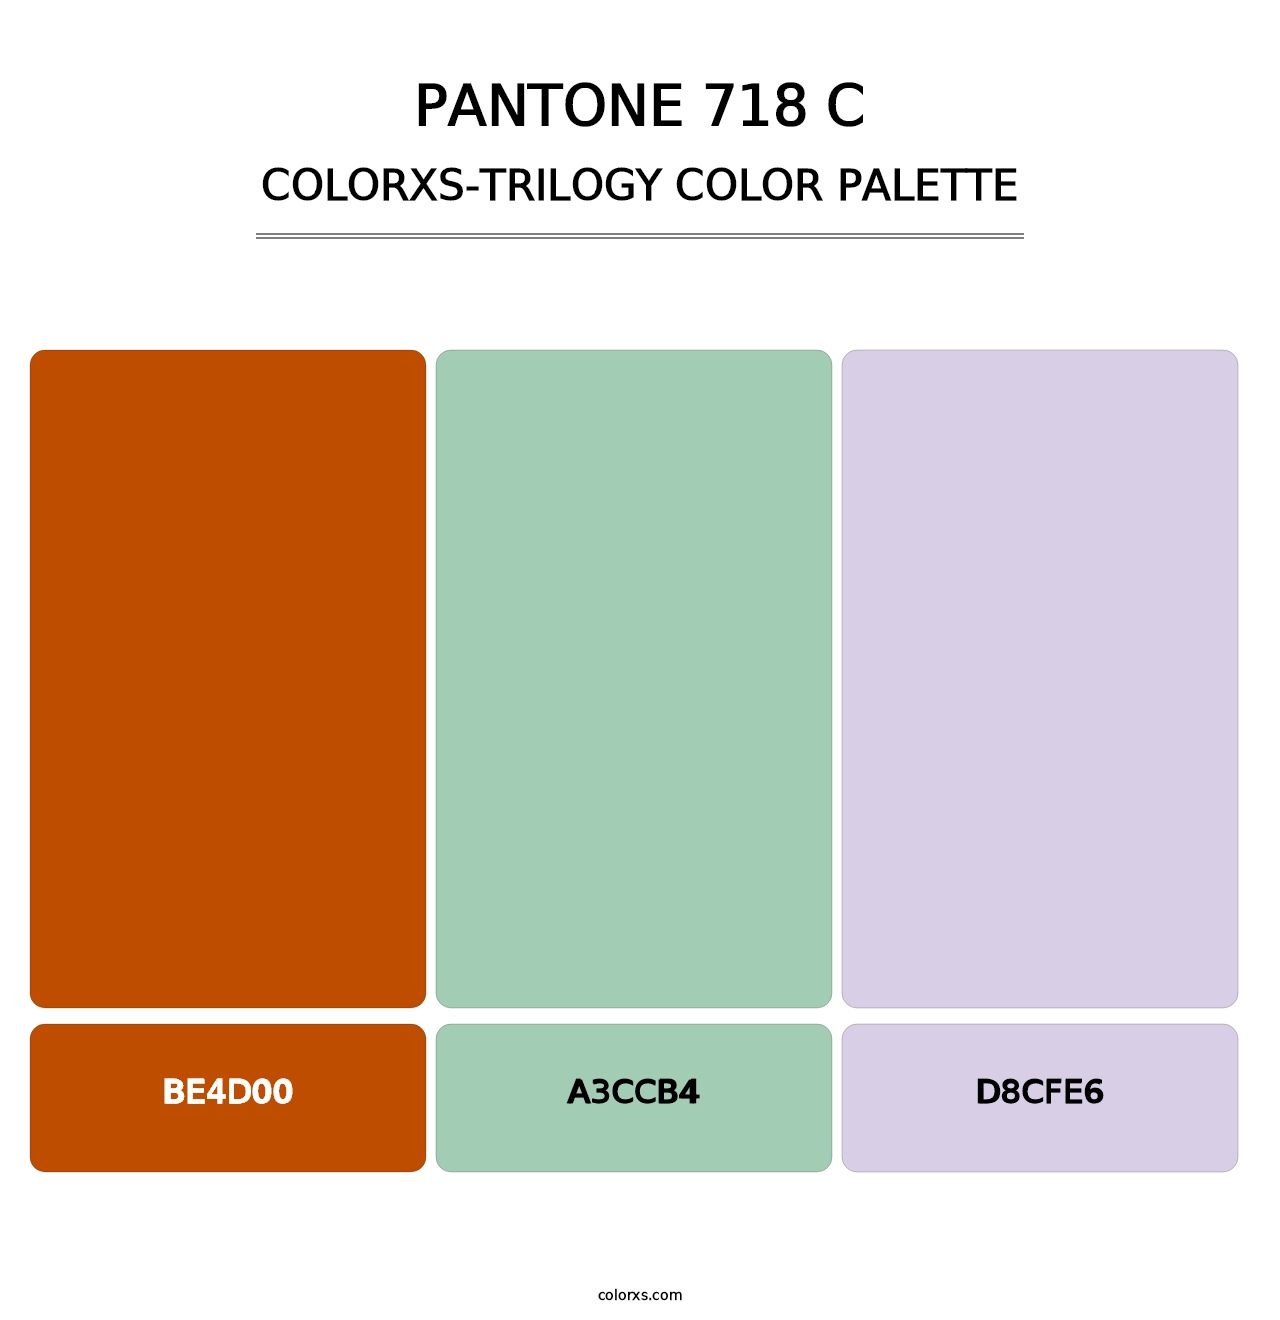 PANTONE 718 C - Colorxs Trilogy Palette